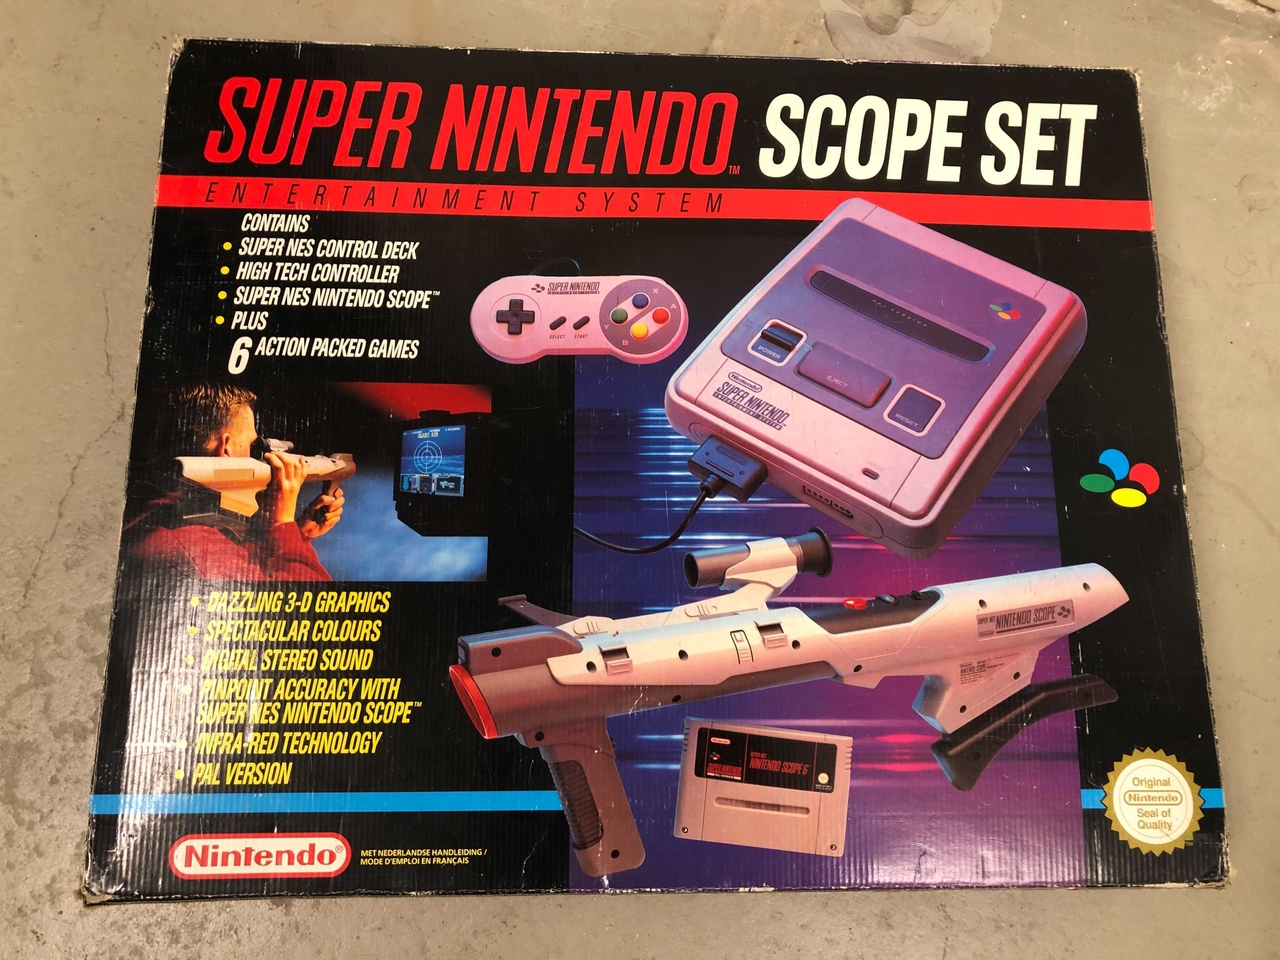 Super Nintendo Starter Pack - Scope Set [Complete] - Super Nintendo Hardware